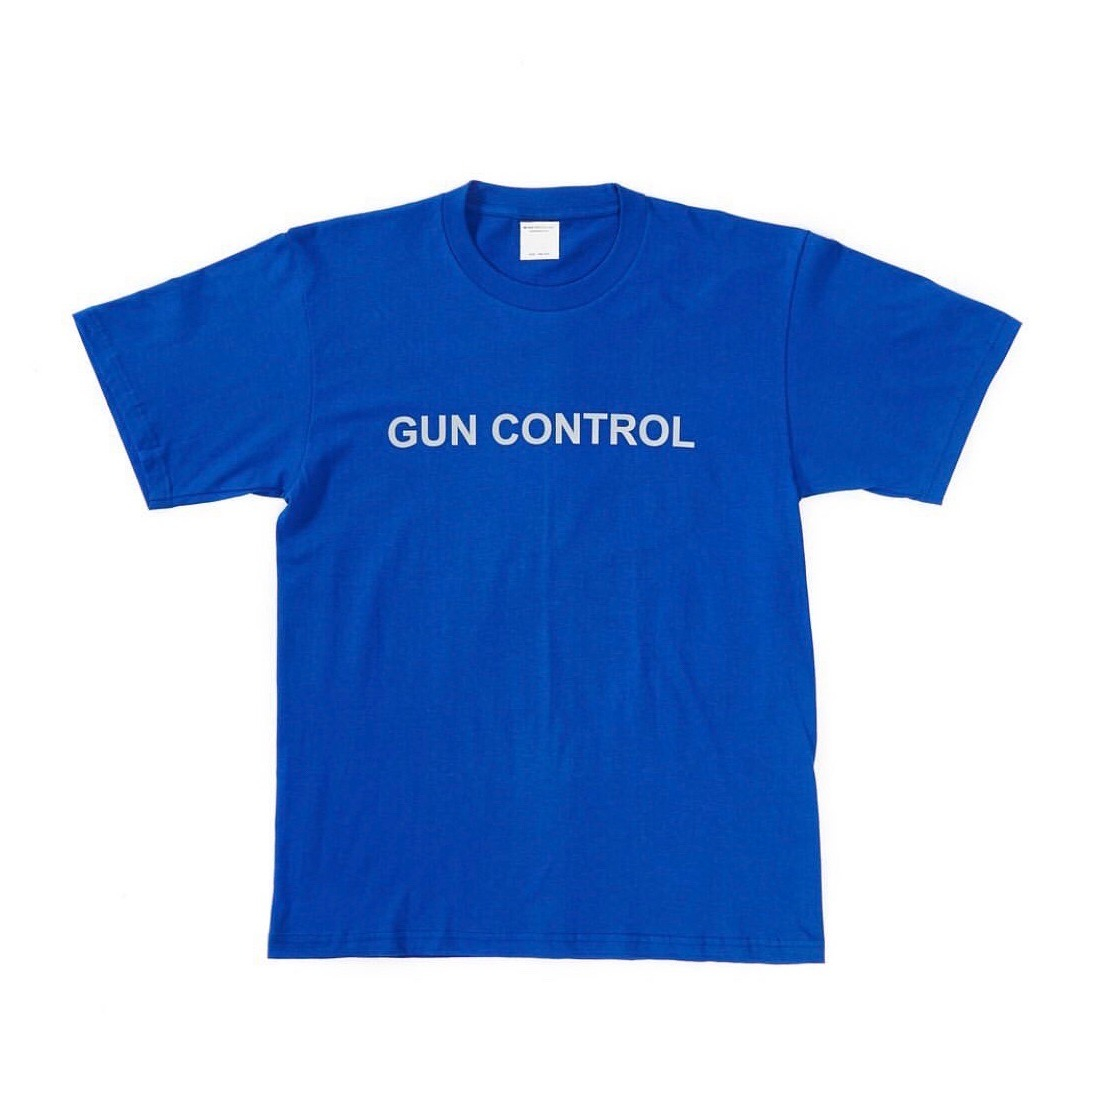 MR.Gun Control Tee (Blue